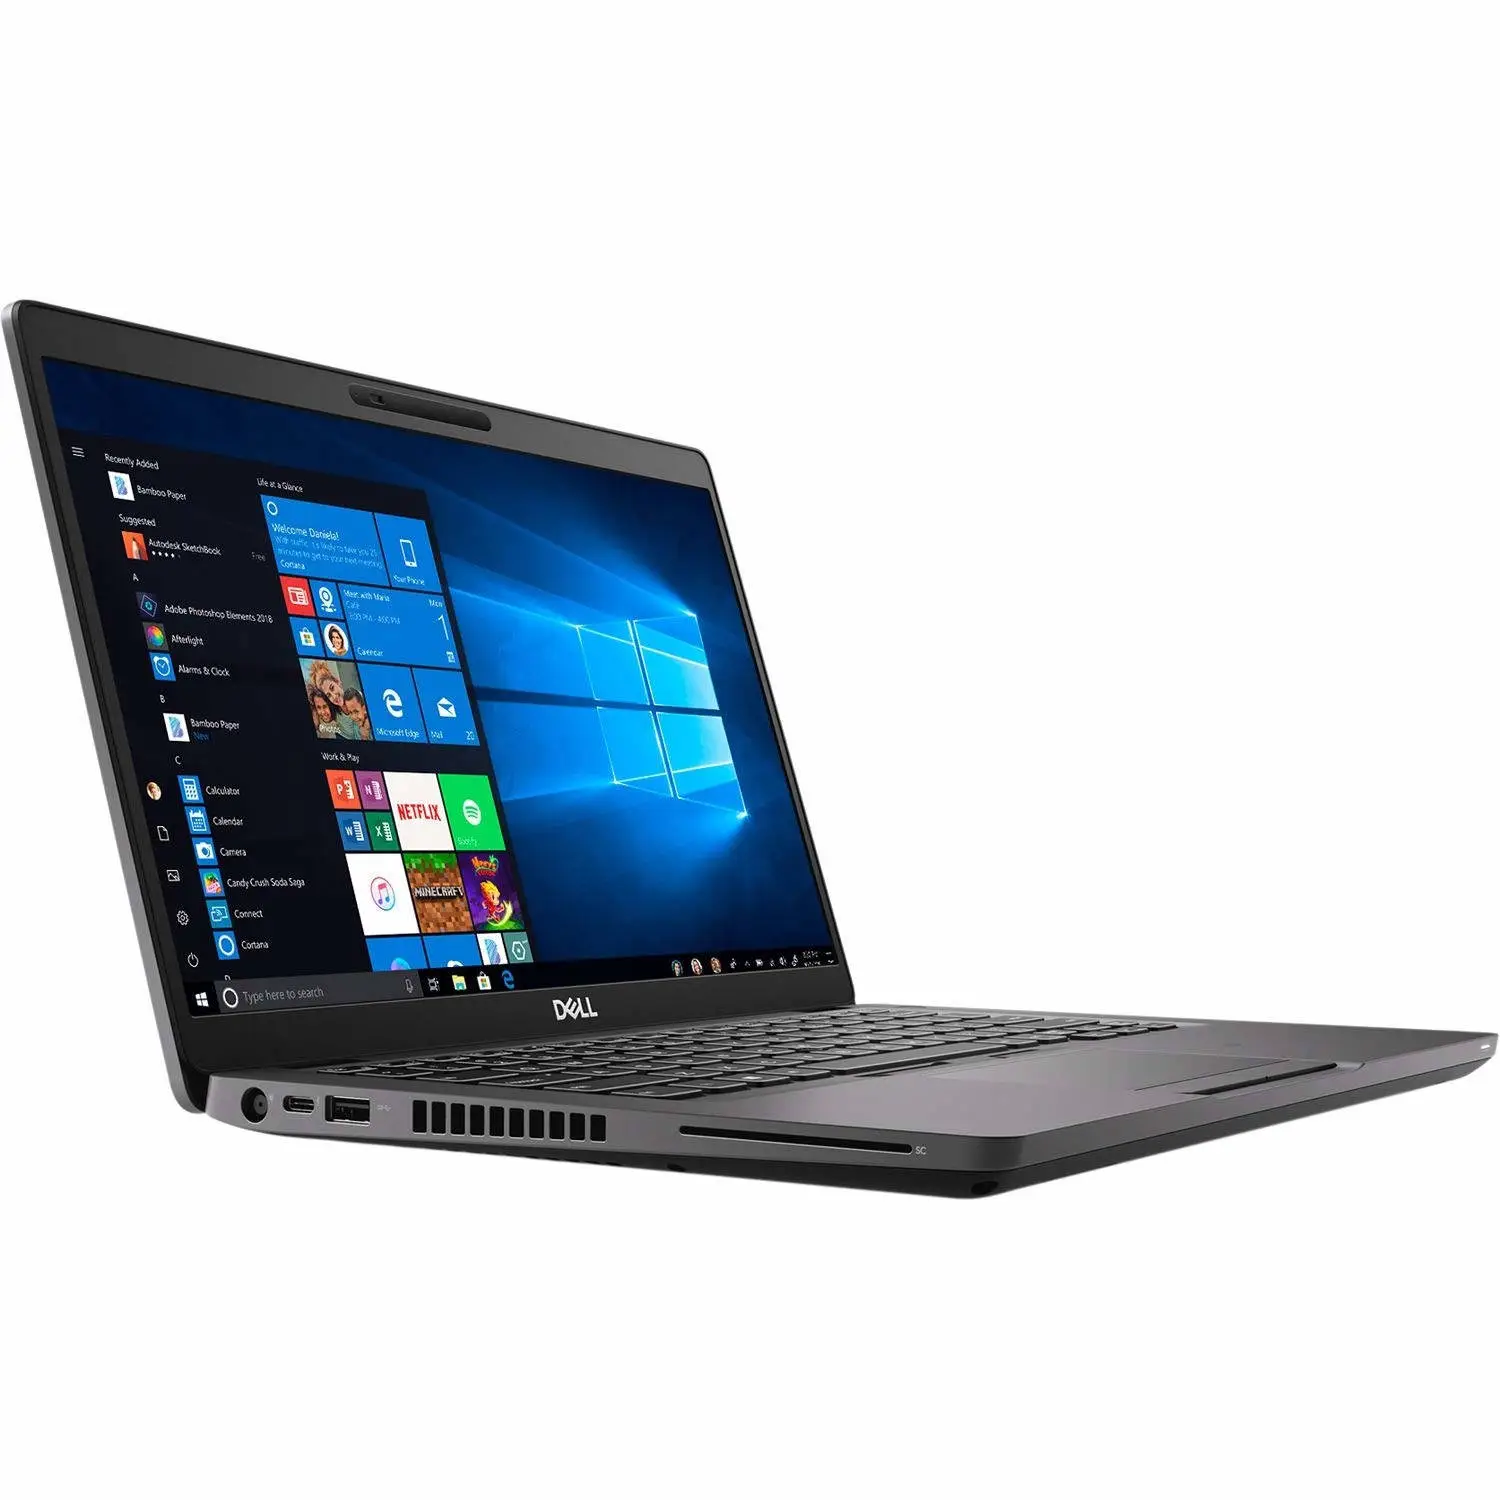 Használt laptop ajánló: Dell latitude 5400 – A megbízható választás